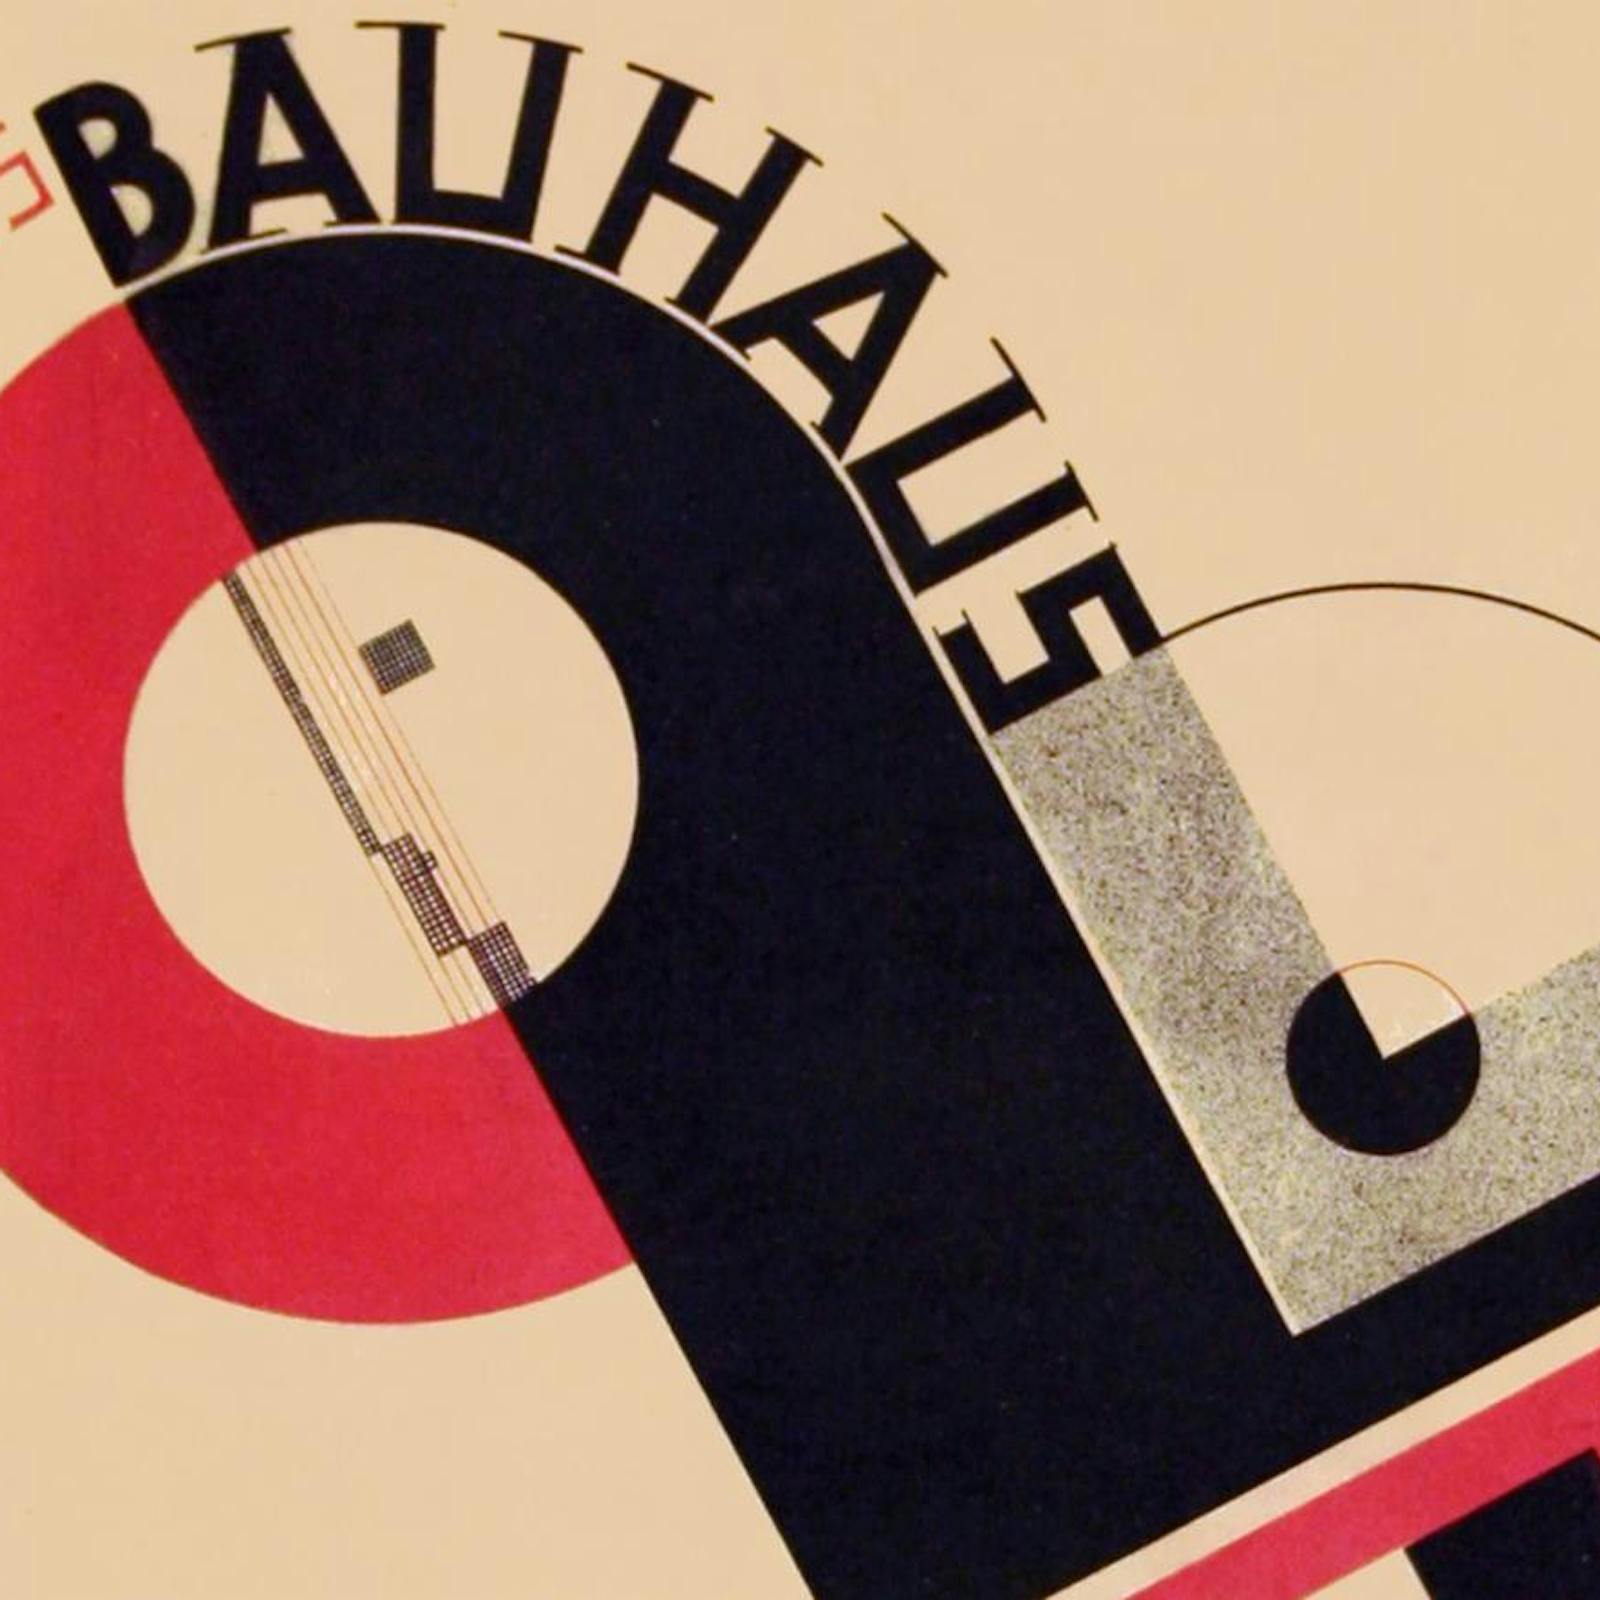 Los 100 Años de la Bauhaus